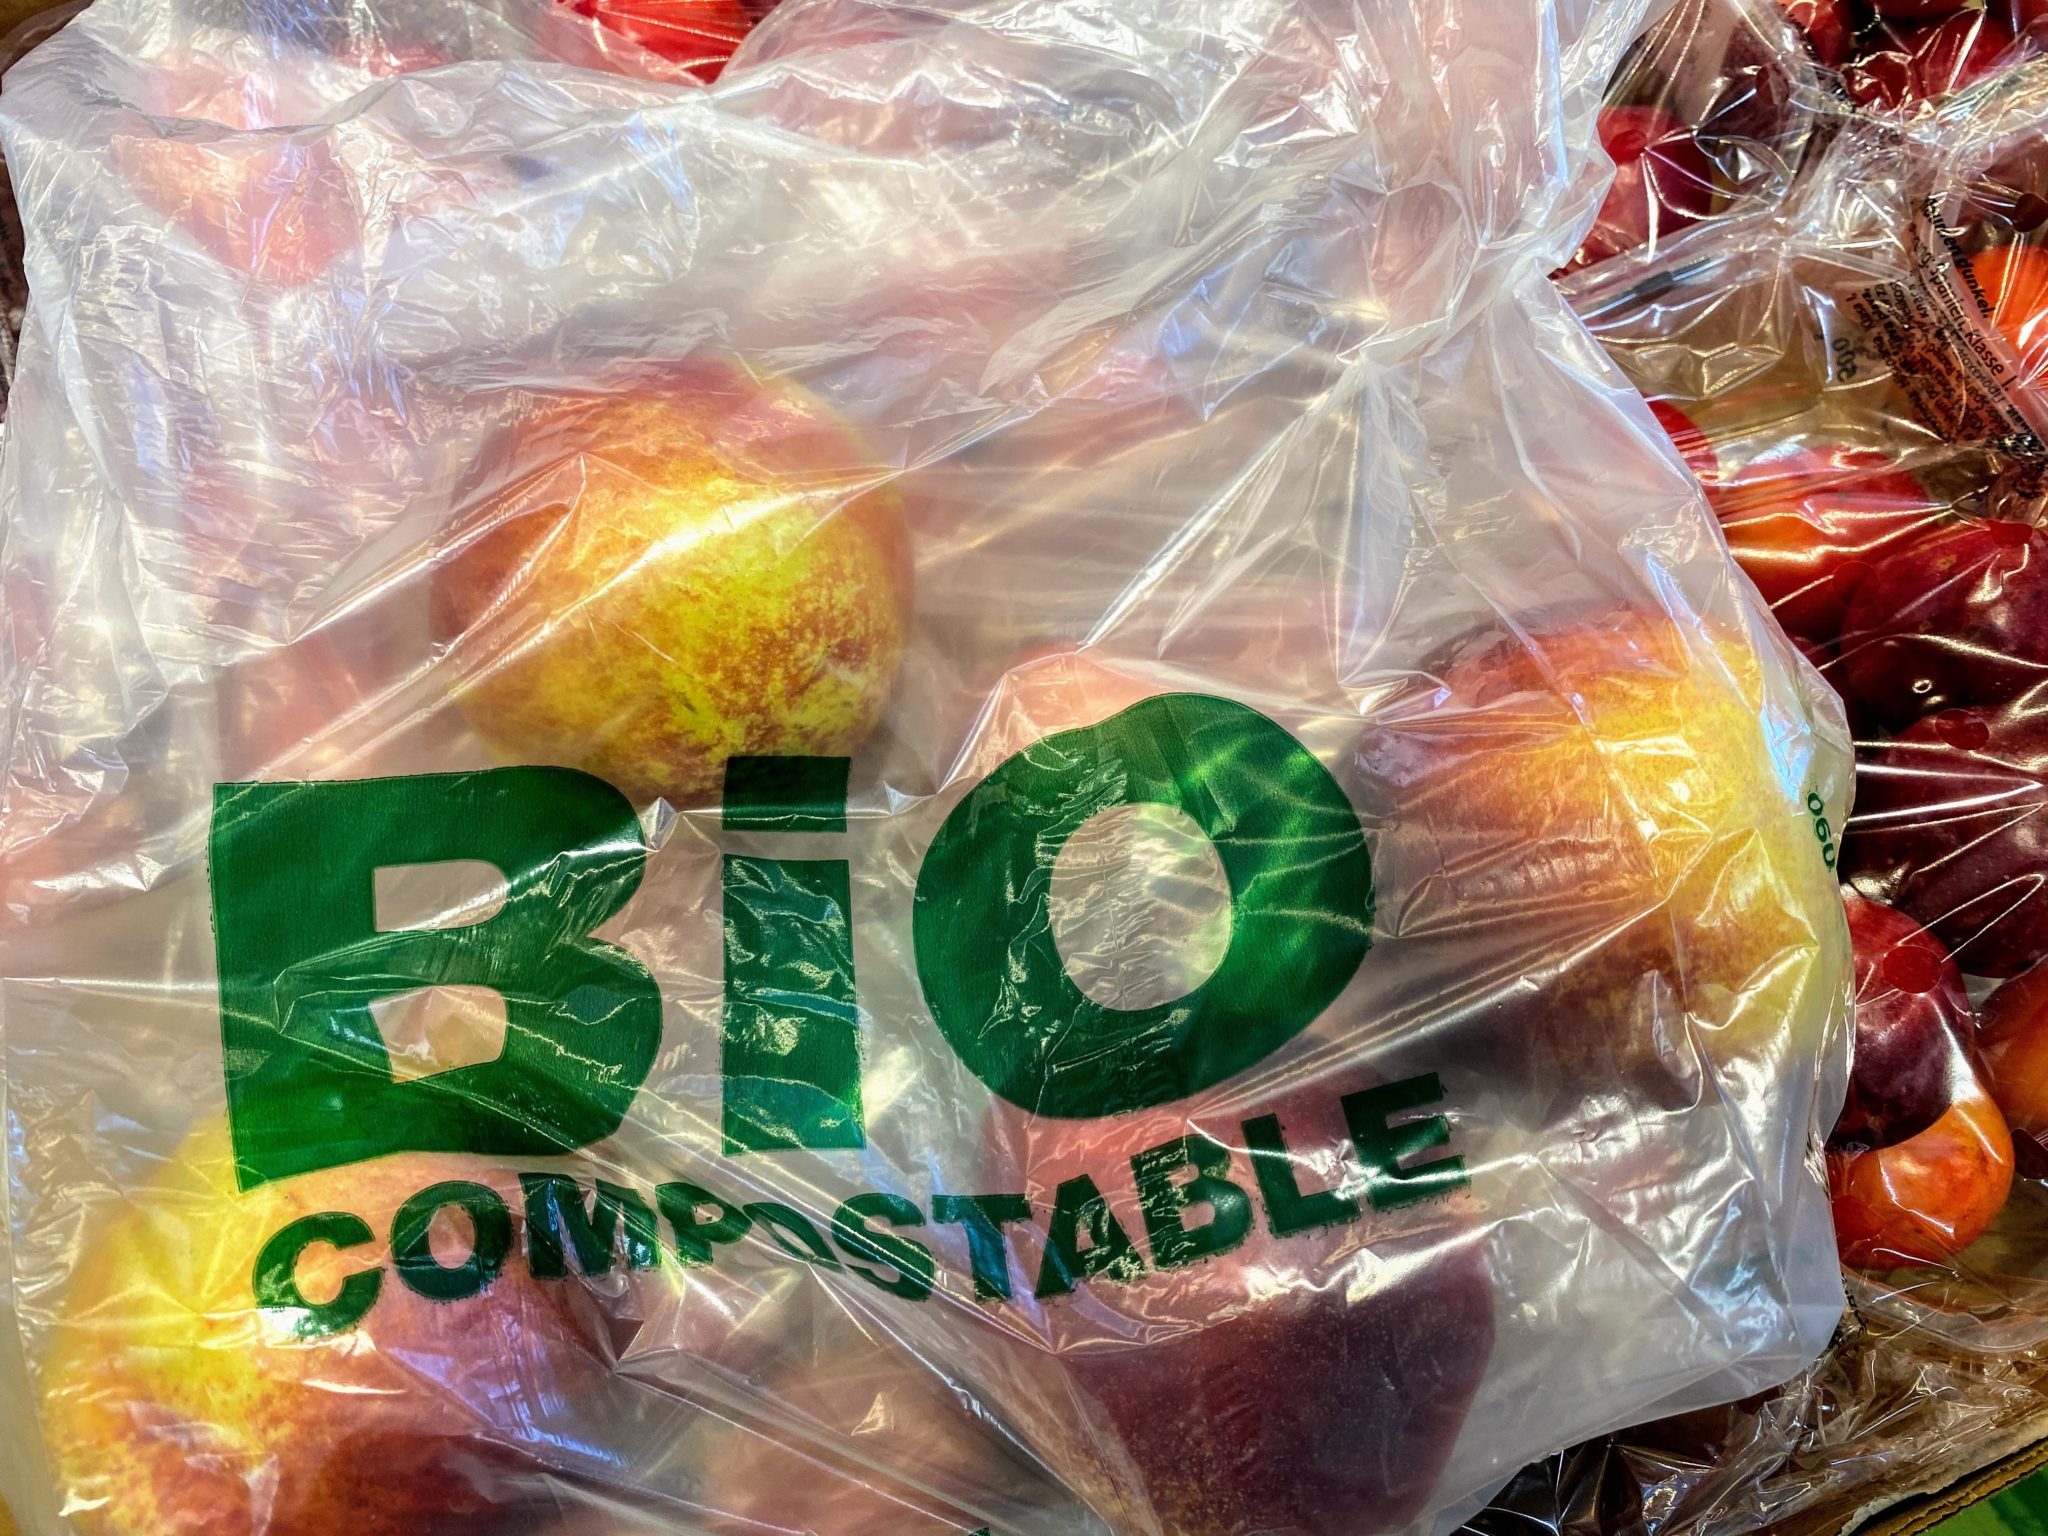 Äpfel sind in einer Türe aus Bioplastik mit dem grünen Aufdruck "BIO compostable" verpackt